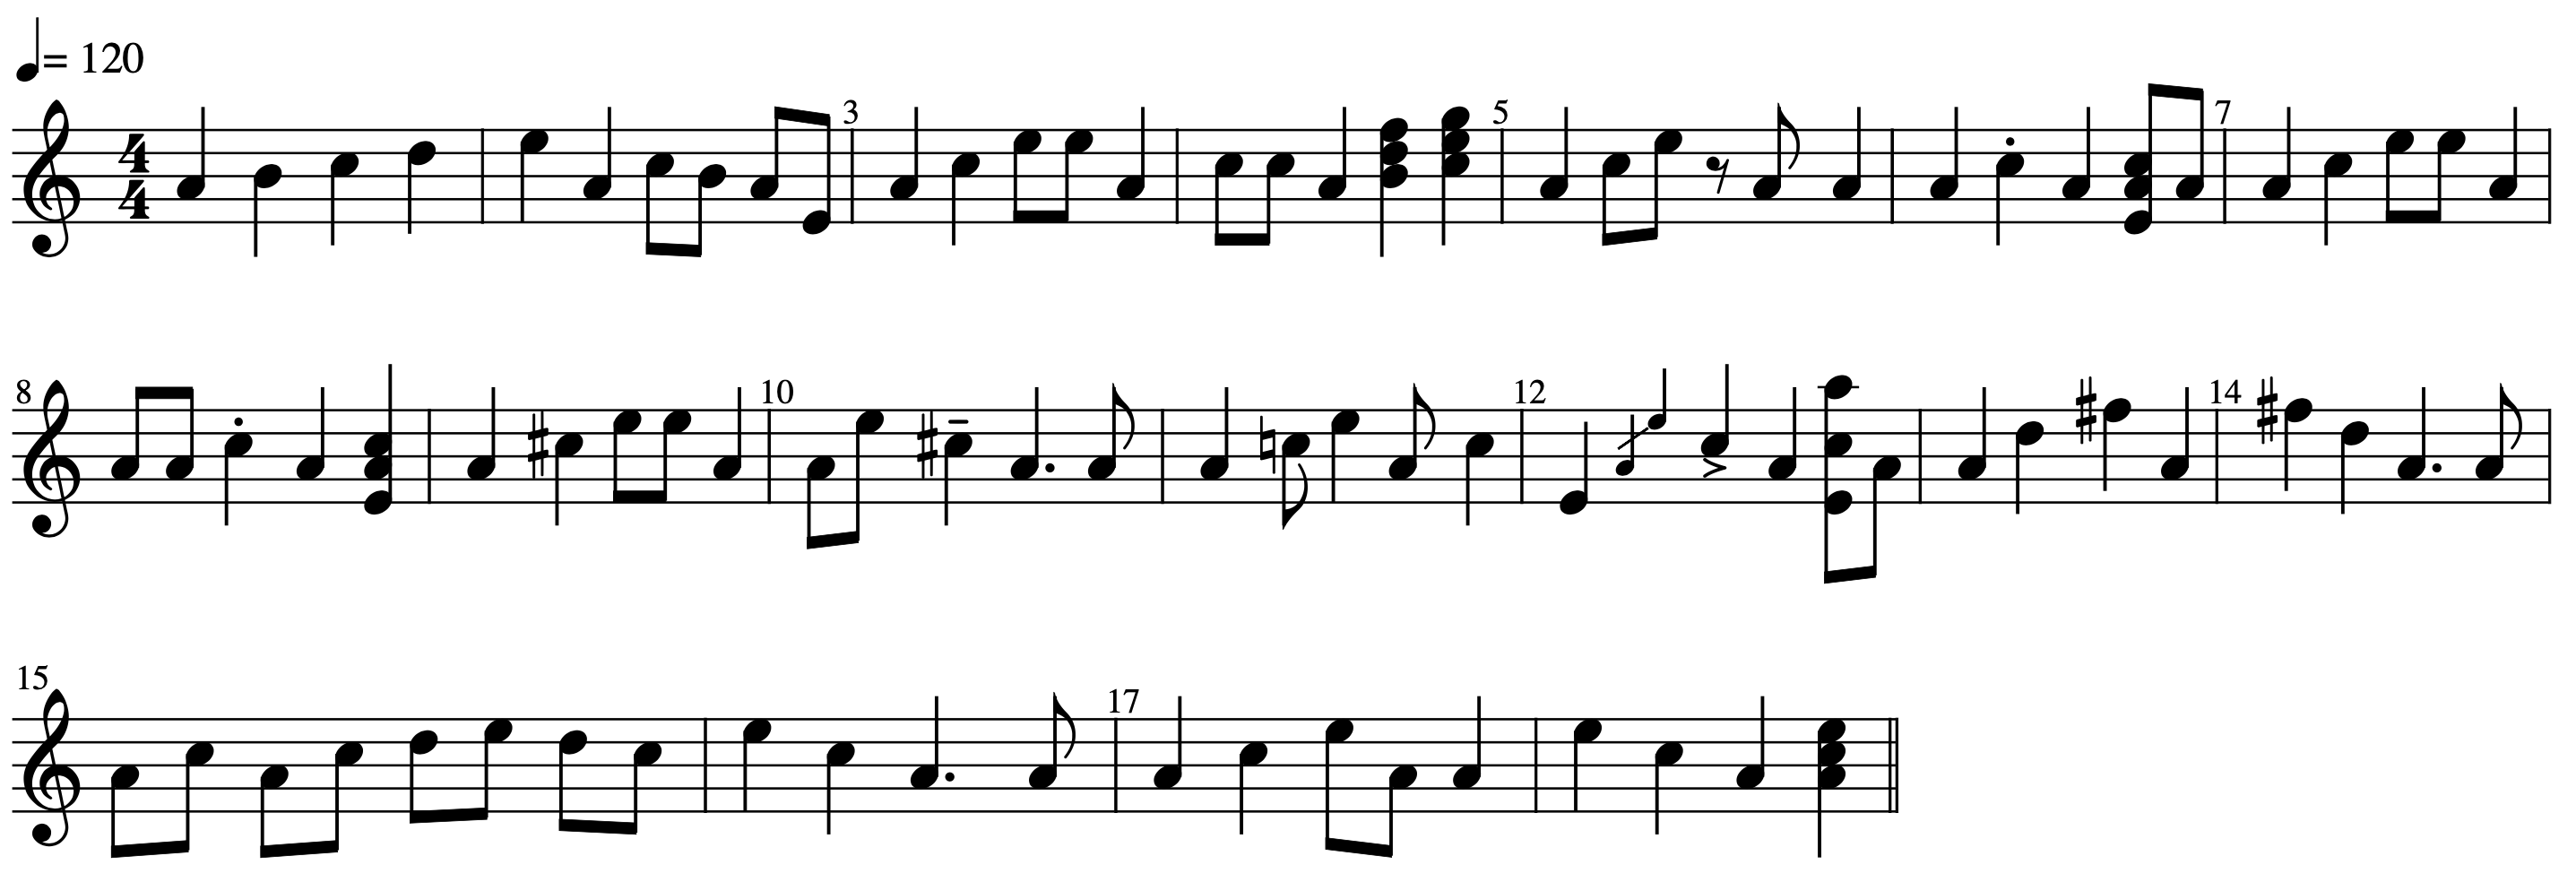 An Original Song Print Score